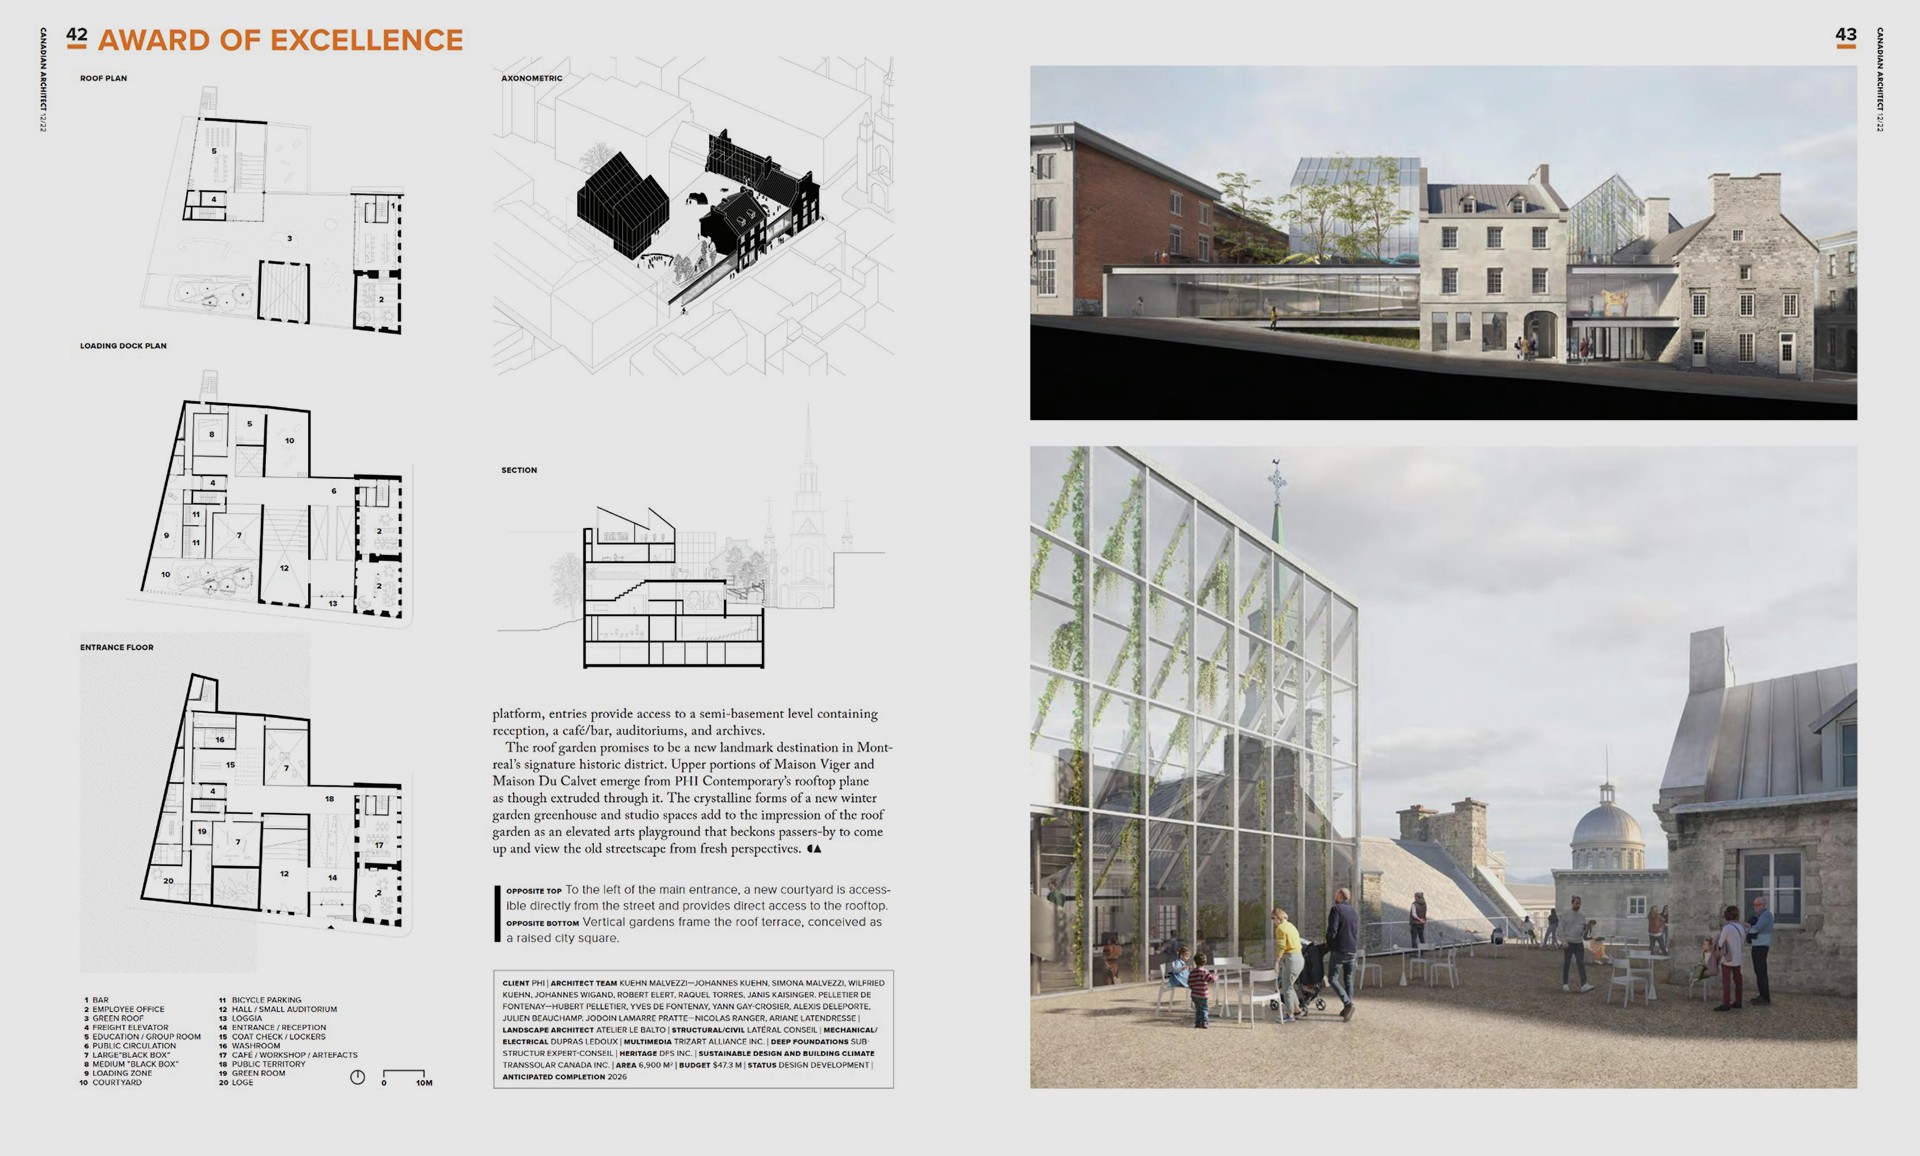 PHI Contemporary: Jodoin Lamarre Pratte architectes joins Pelletier de Fontenay and Kuehn Malvezzi